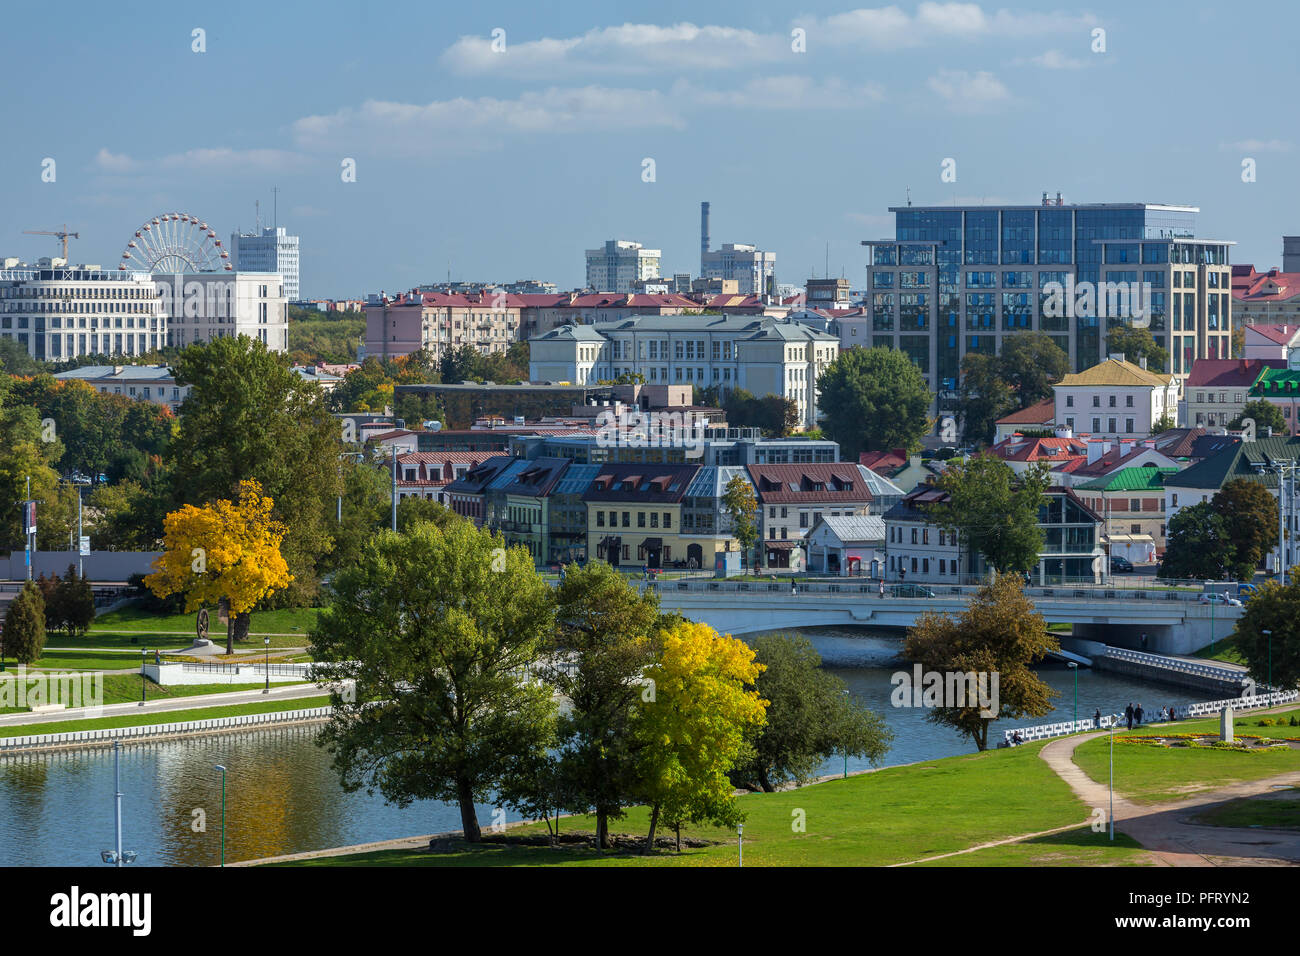 Vue panoramique vue d'automne du centre historique de Minsk, en Biélorussie. Rivière Svisloch et célèbre Zybickaya Street View Banque D'Images